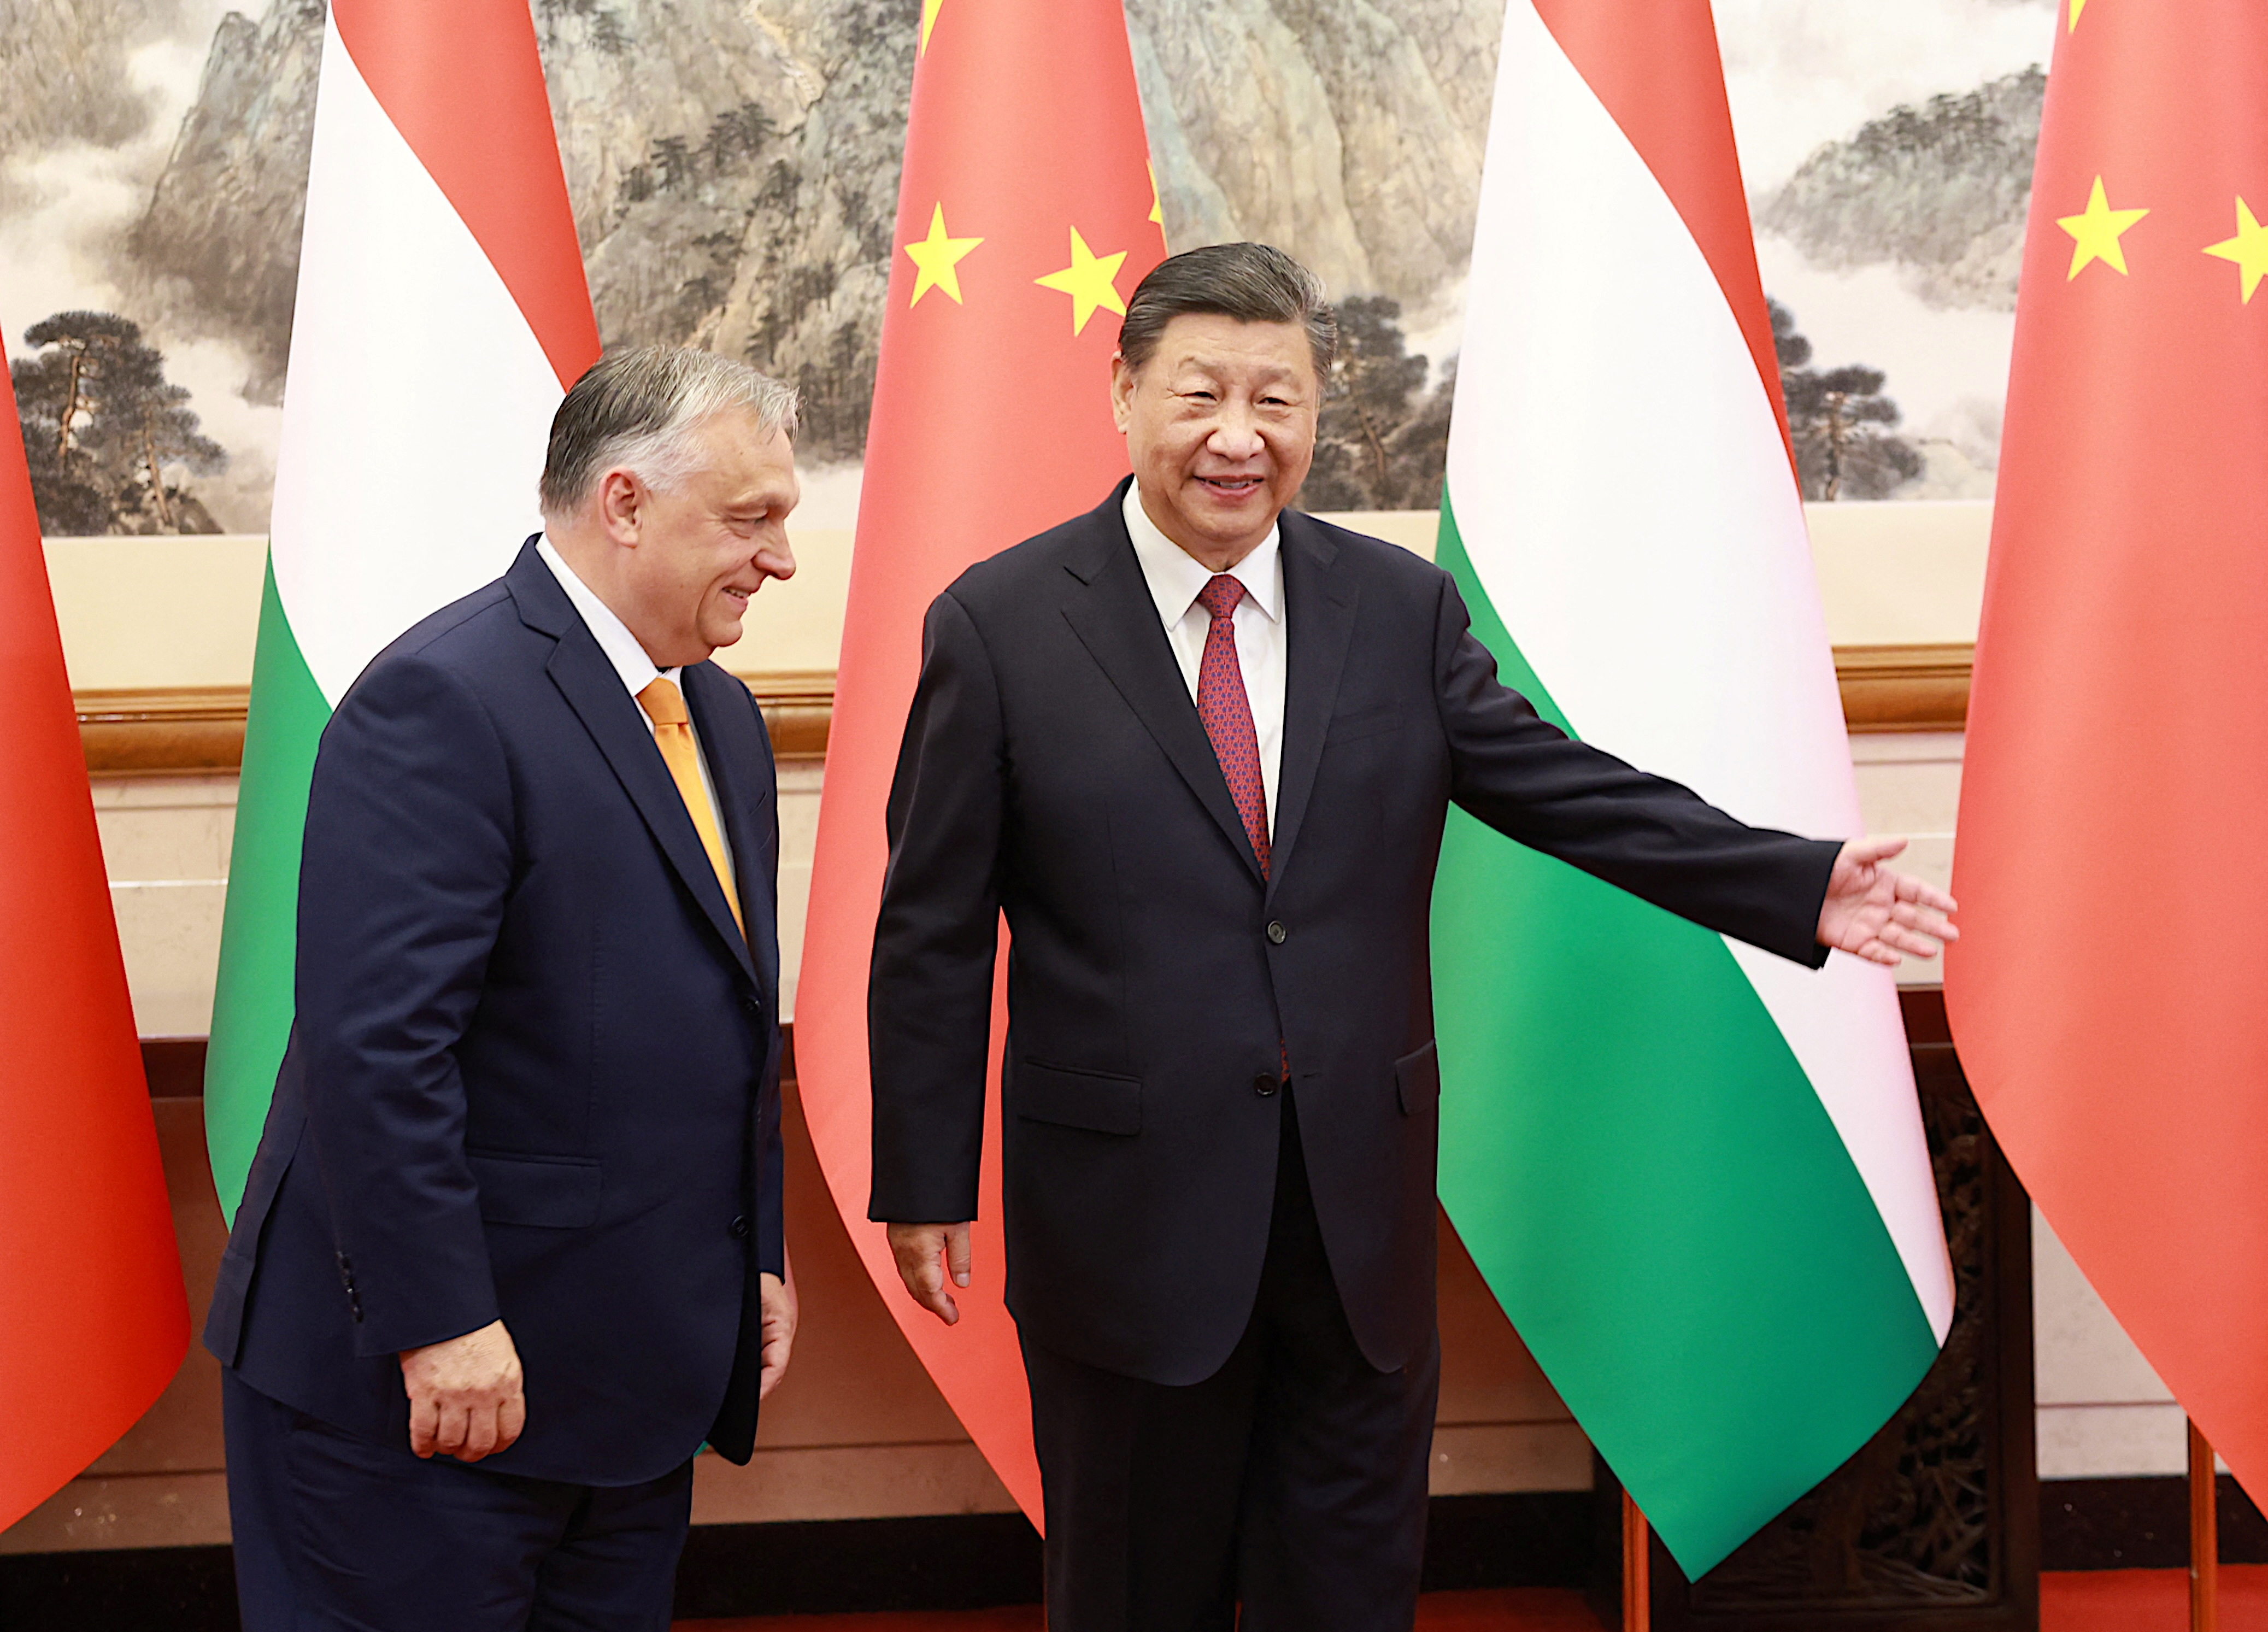 La Hongrie a emprunté discrètement un milliard d'euros à la Chine